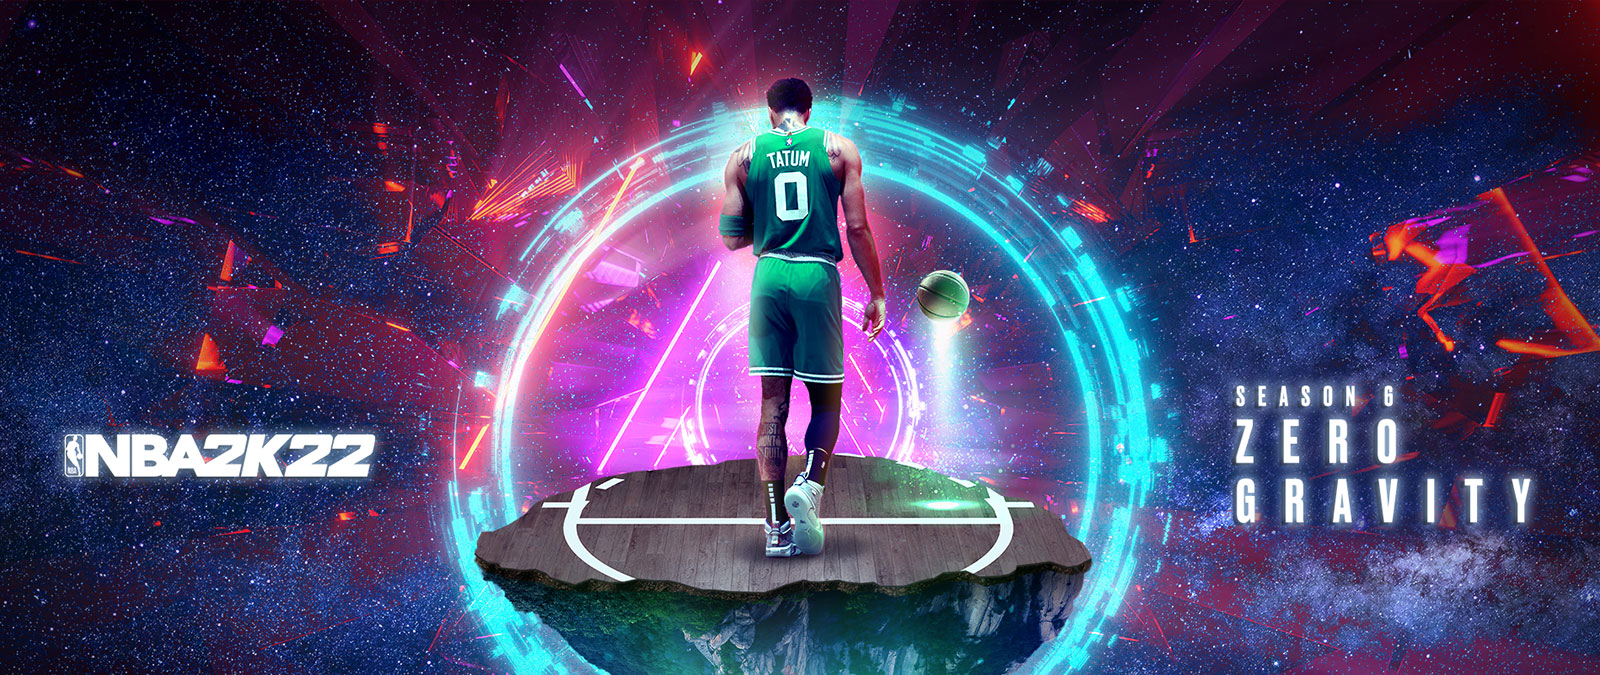 NBA 2K22, Season 6: Zero Gravity, Tatum stojí na kúsku basketbalového ihriska, ktoré sa vznáša vo vesmíre obklopené prstencami energie.